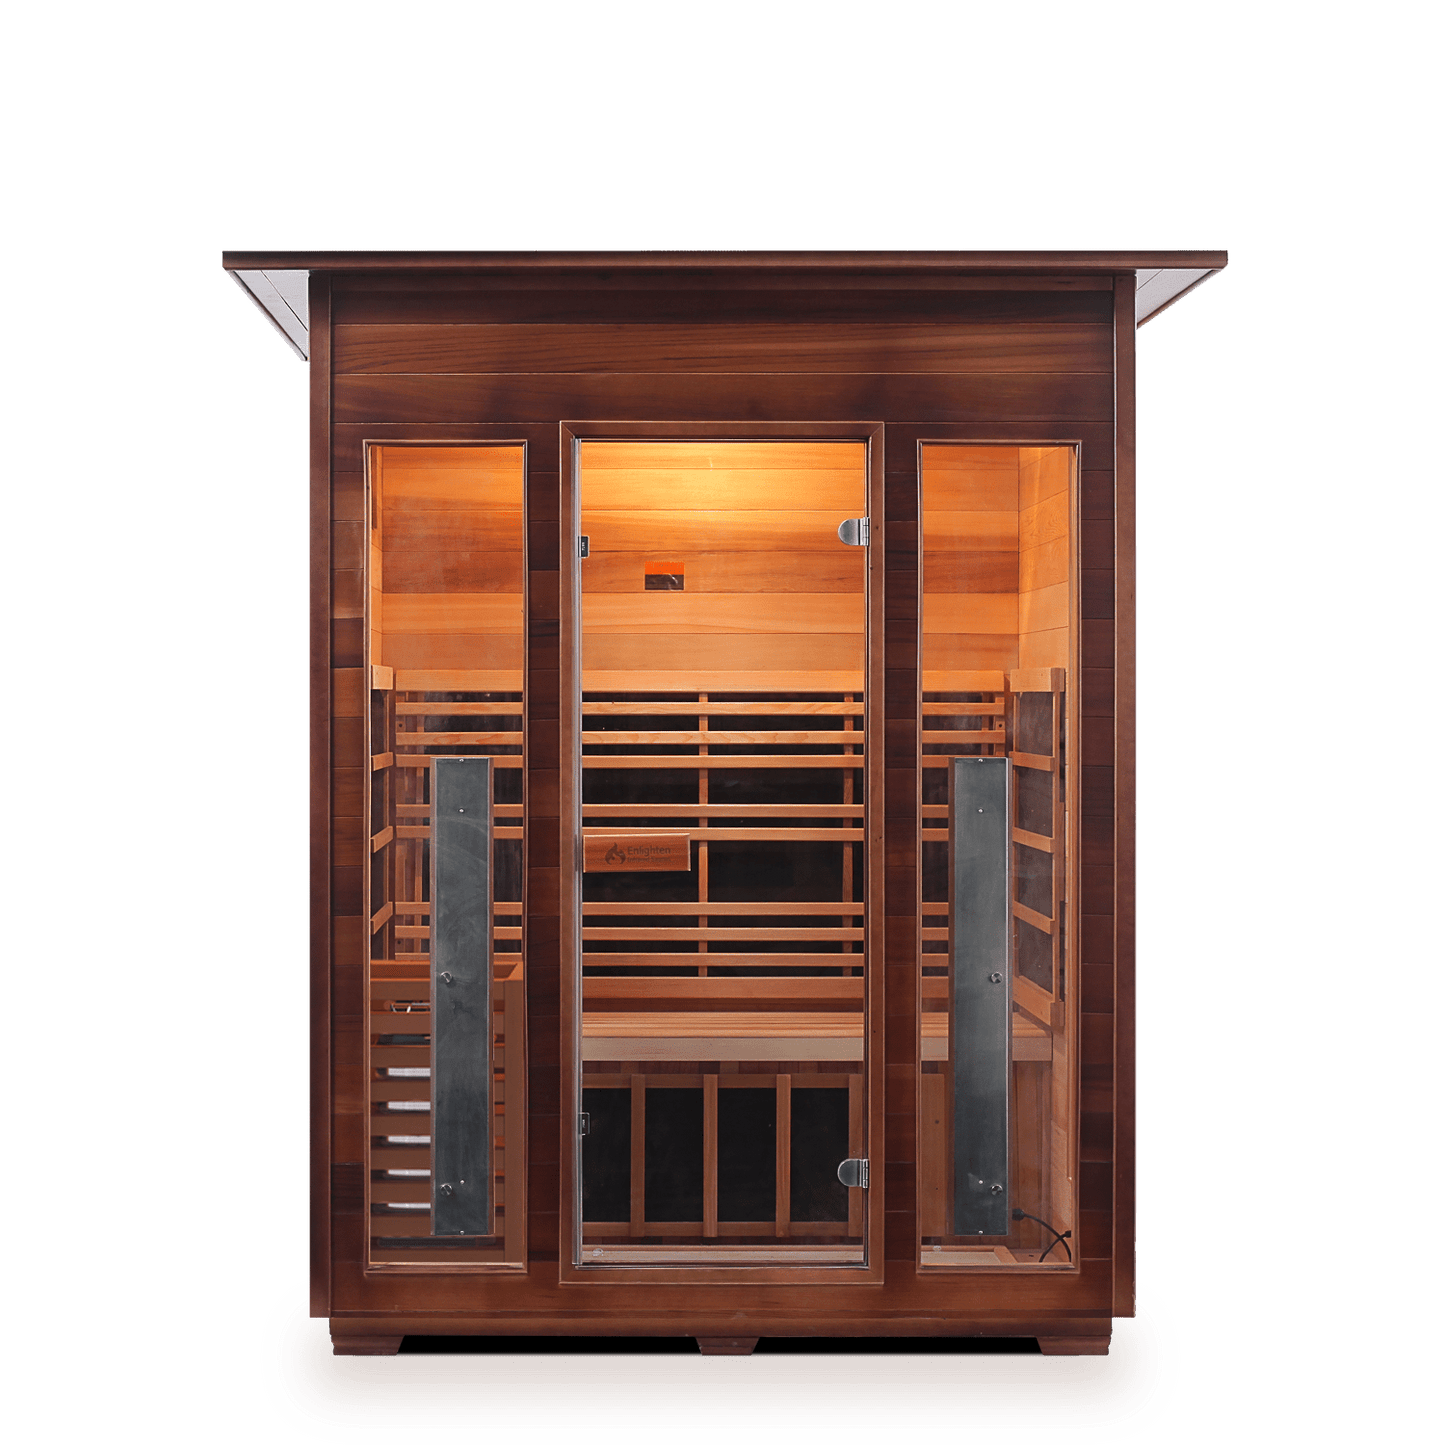 Enlighten Infrared/Traditional Sauna DIAMOND - 3 Indoor - 3 Person Sauna